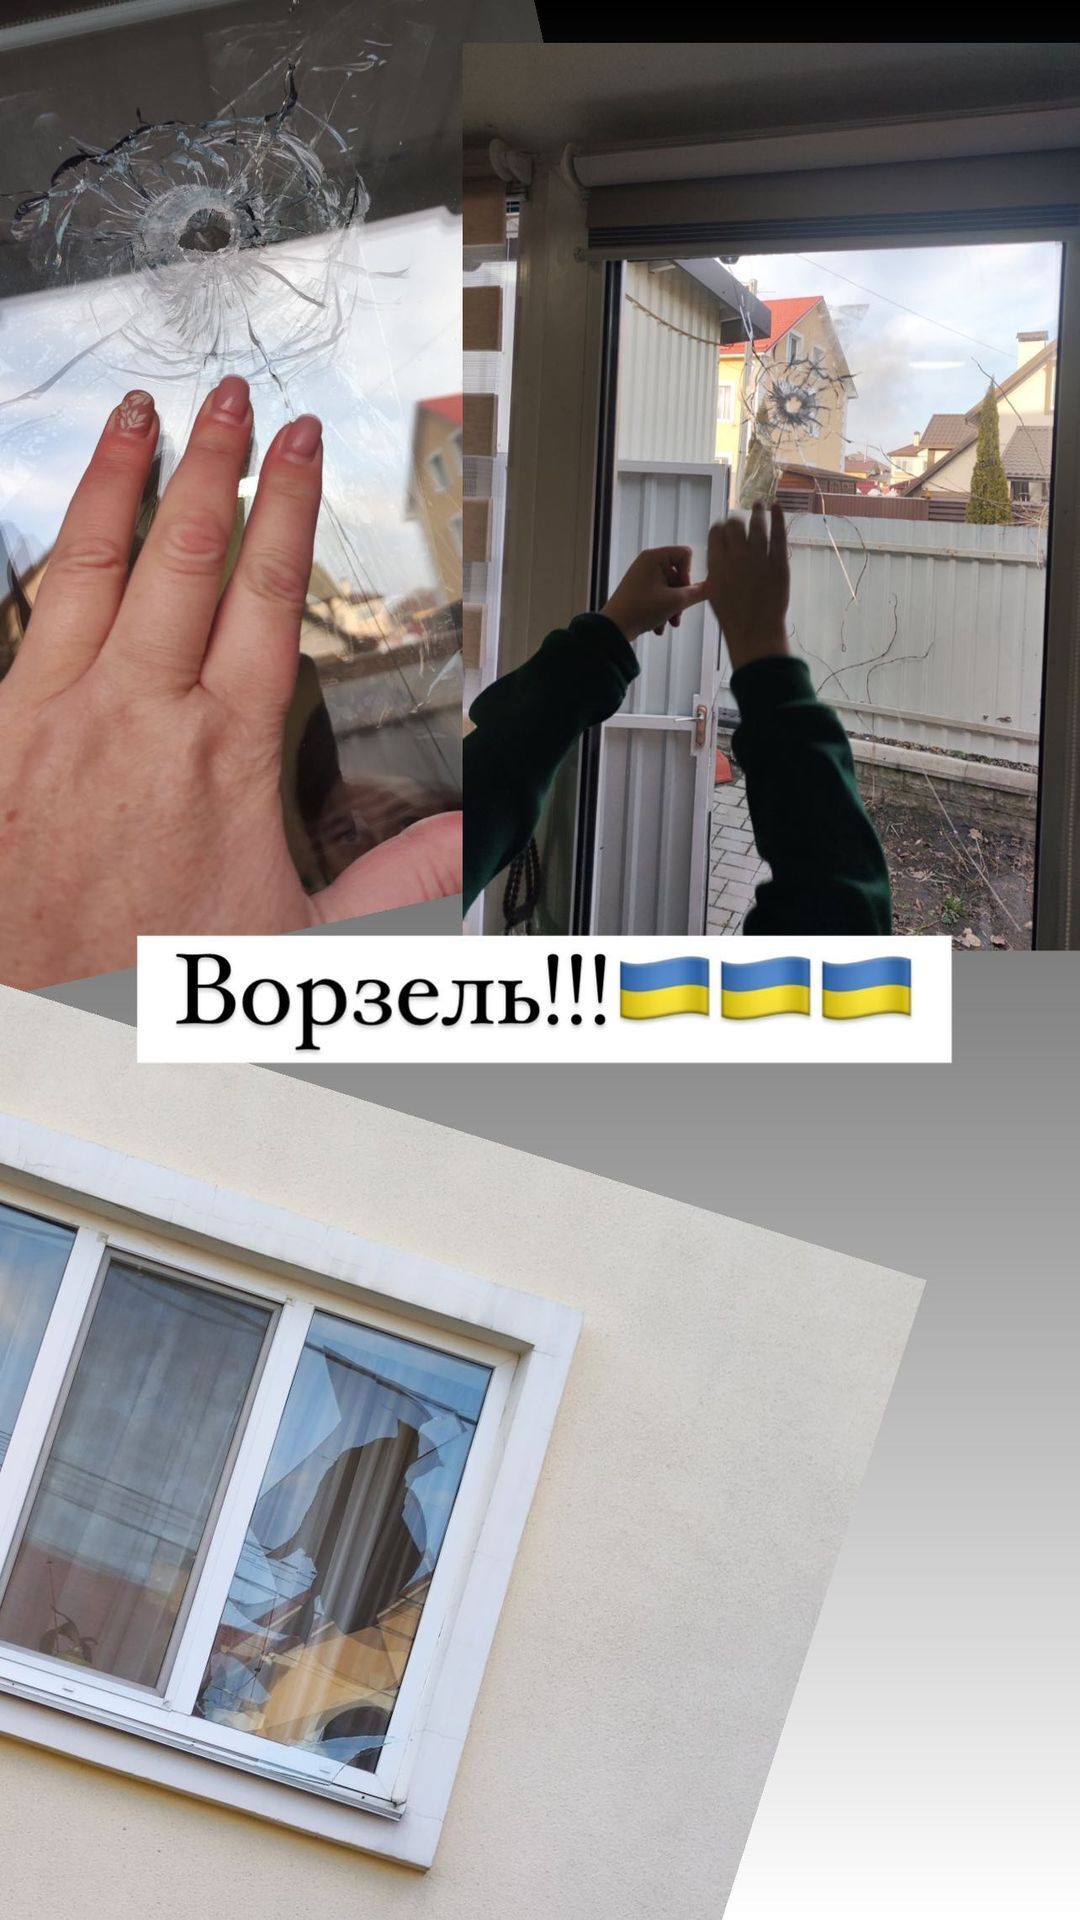 Дом Усиков атаковали